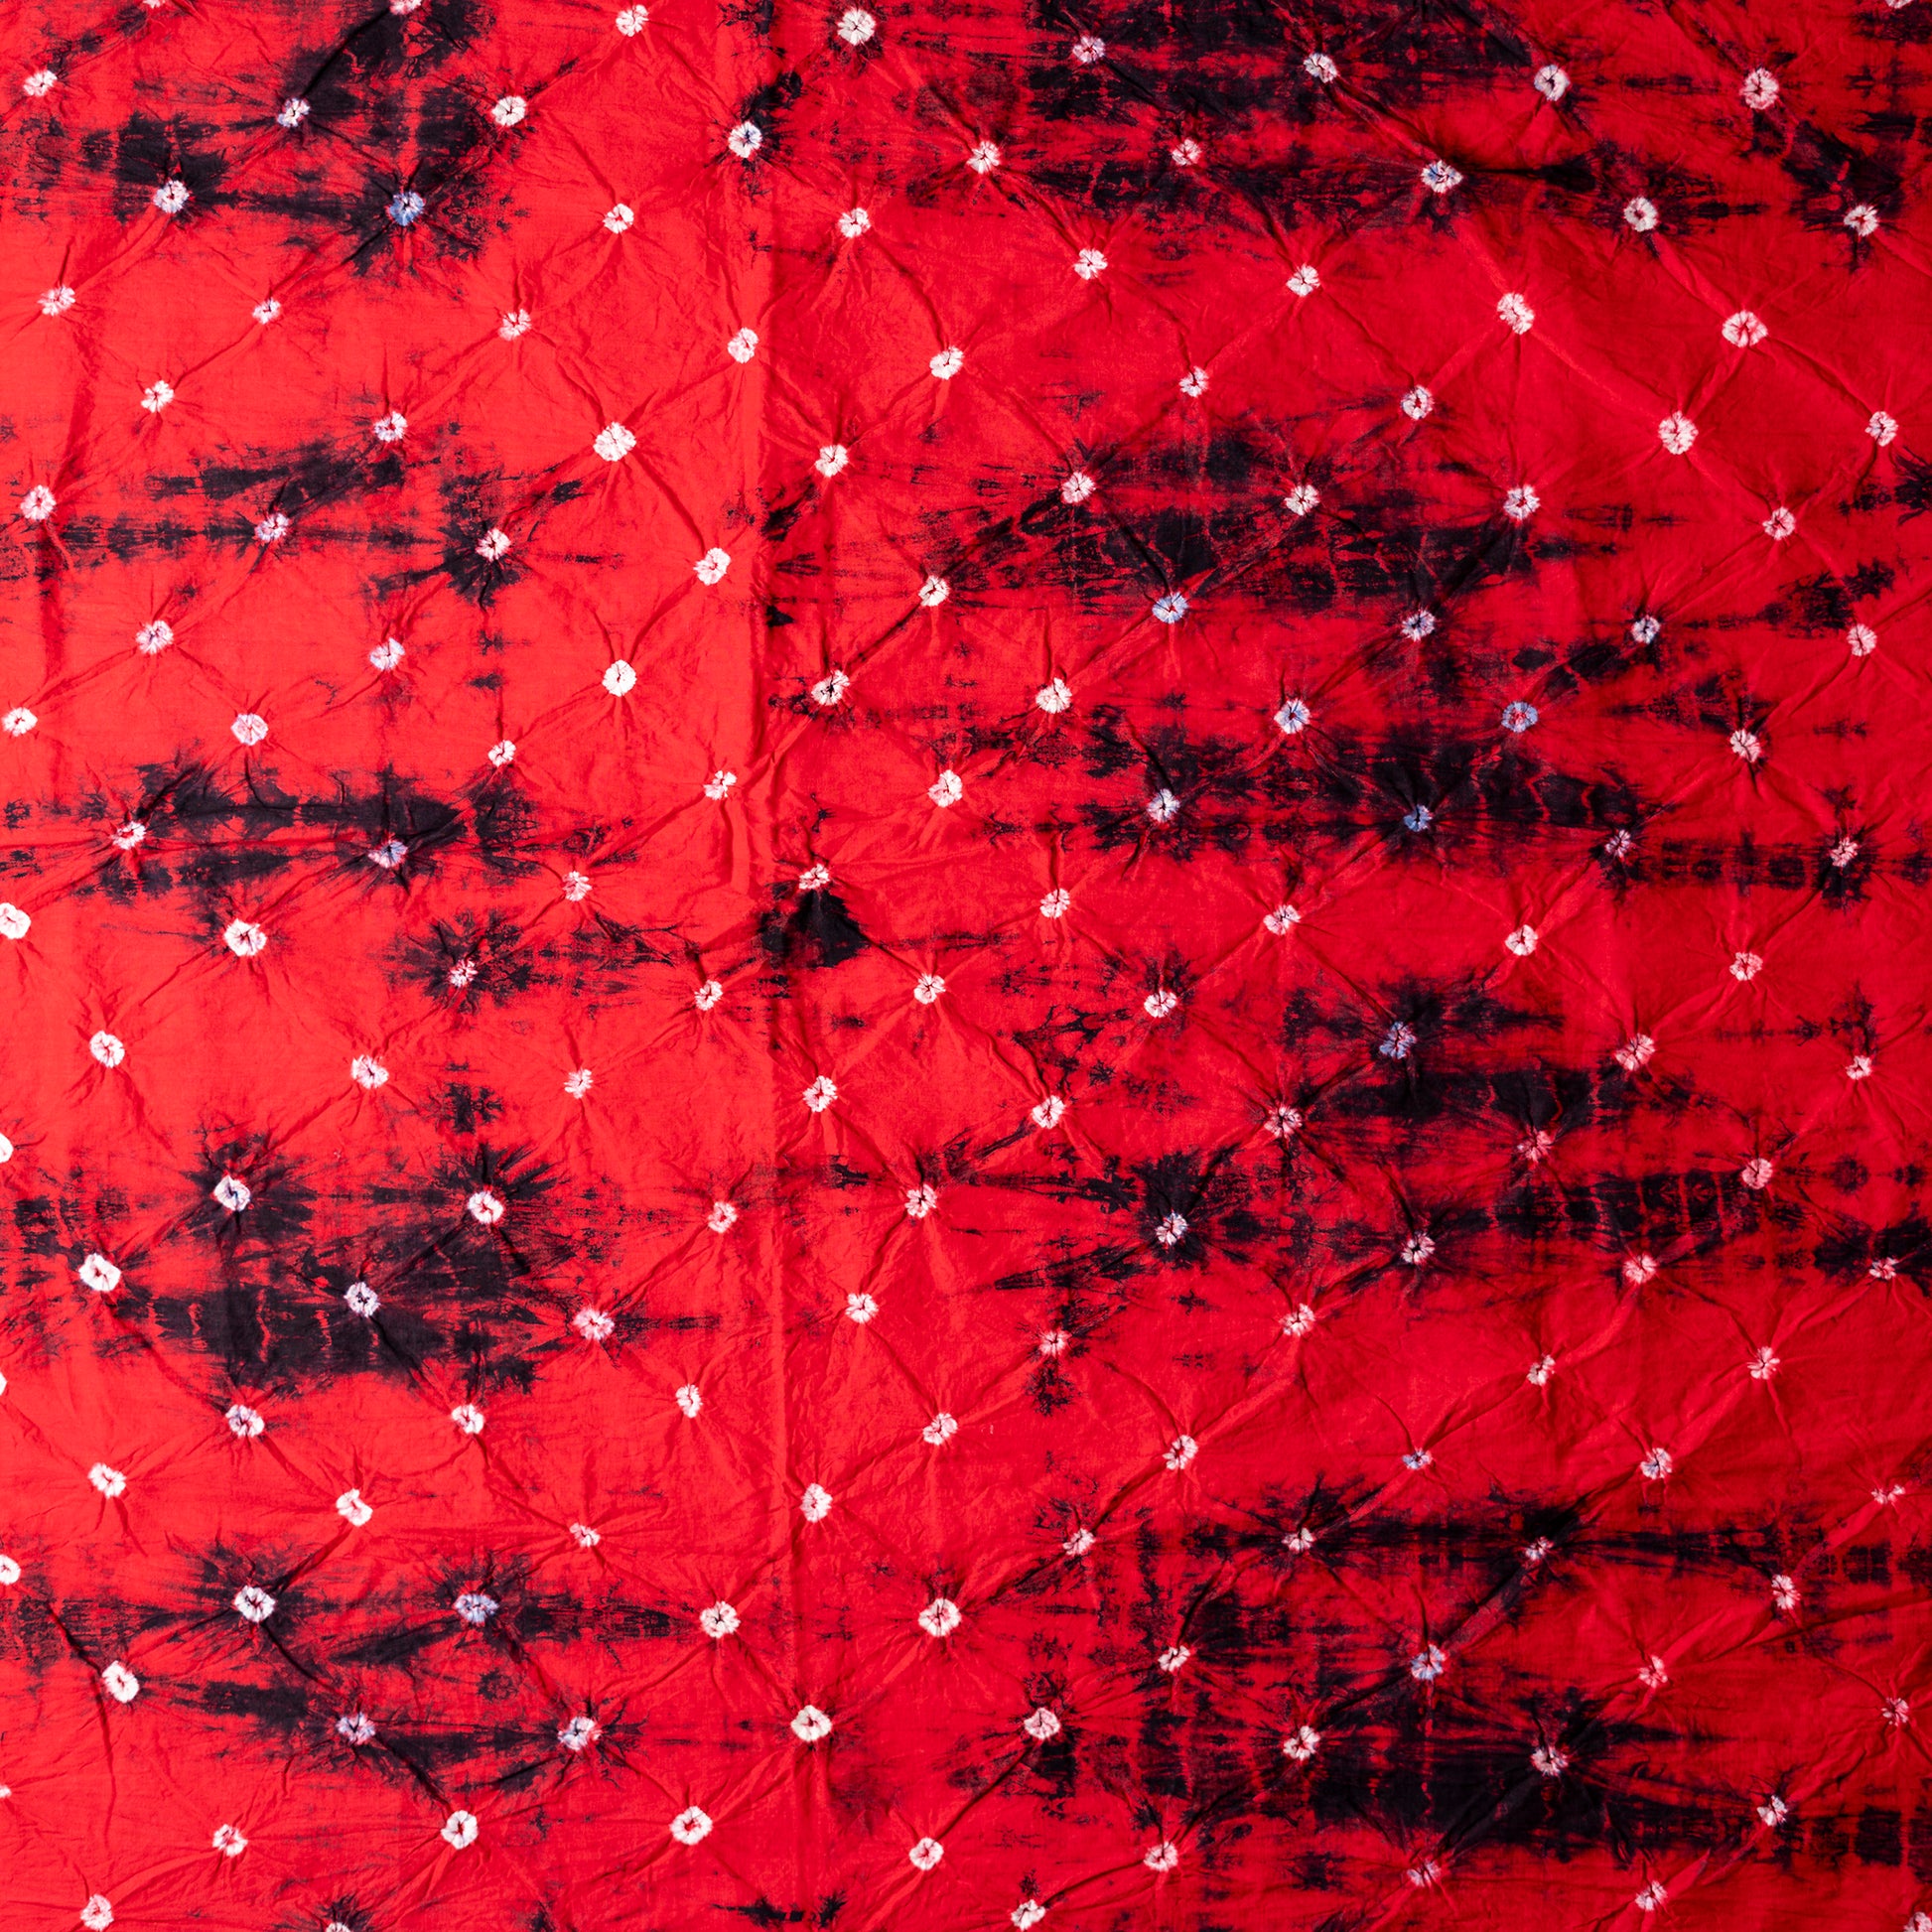 Red color bottom with shibori designs in black.